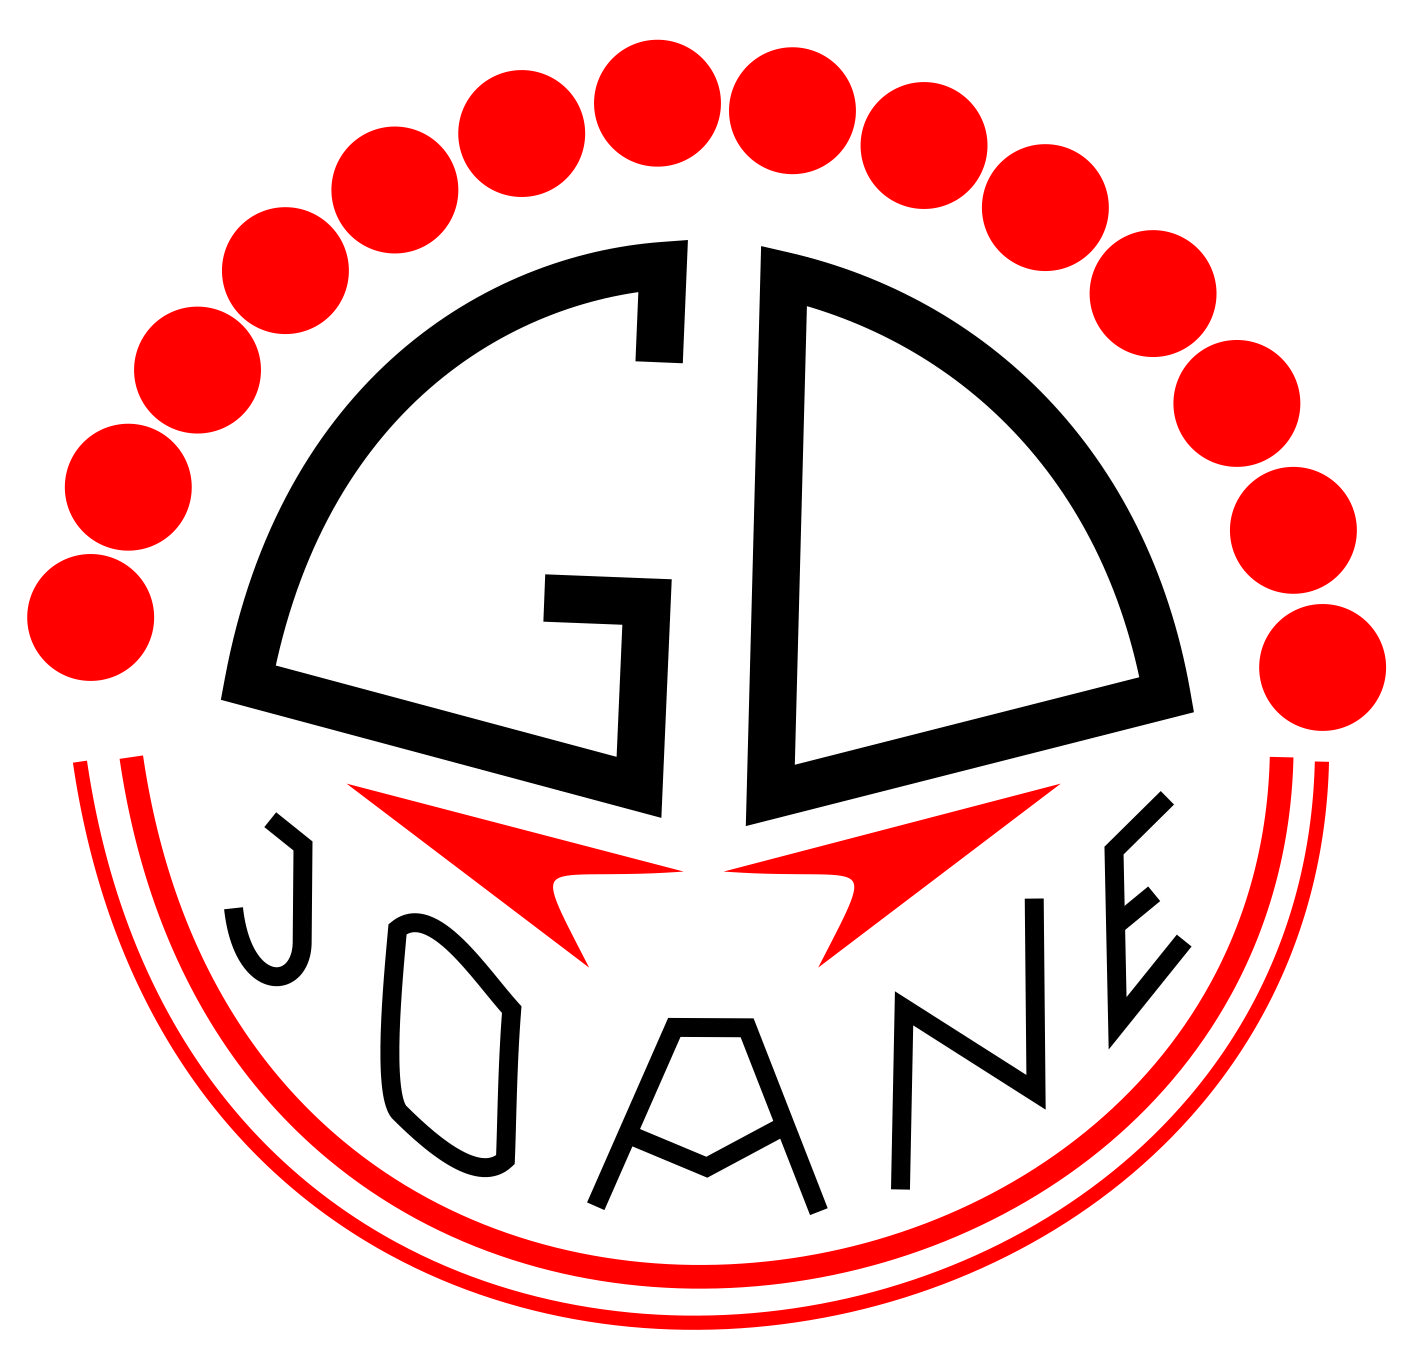 Grupo Desportivo de Joane